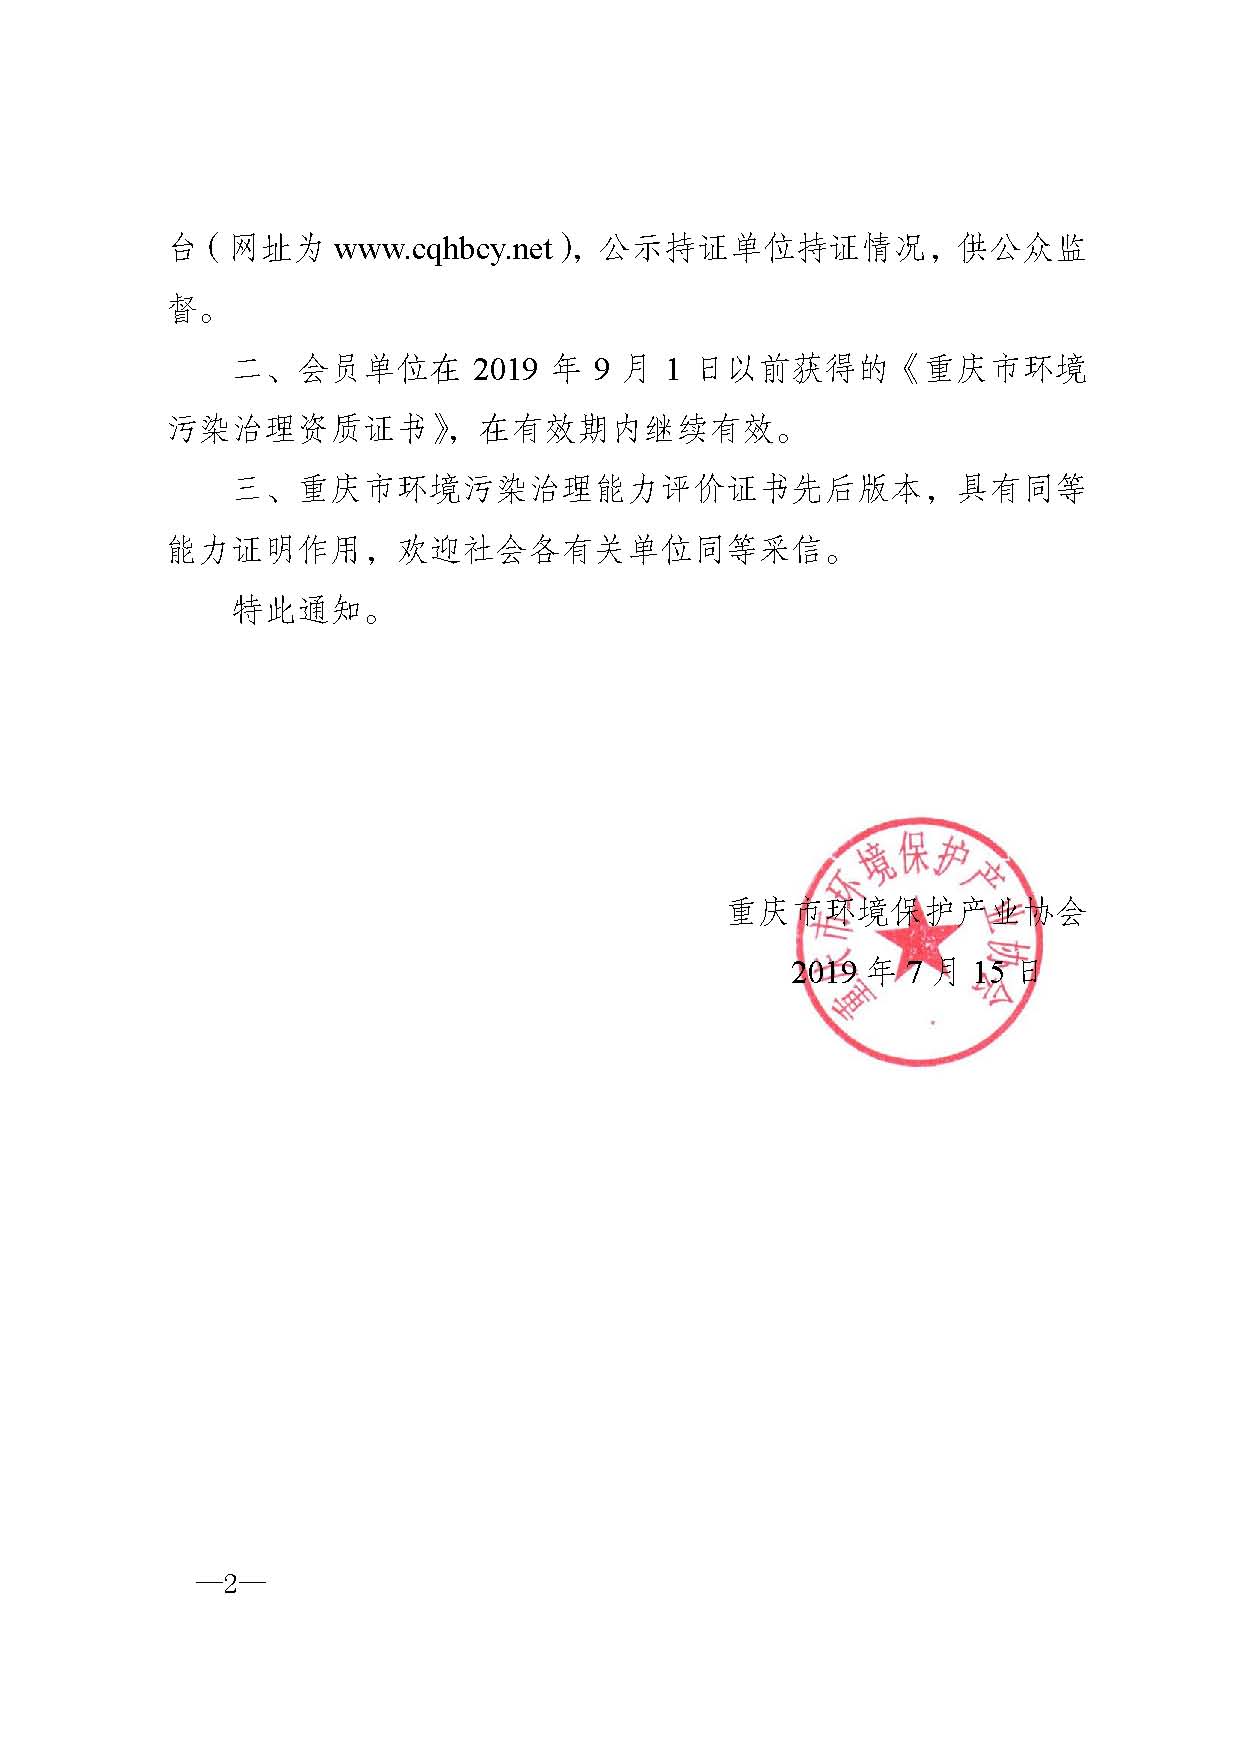 重庆市环境保护产业协会关于污染治理服务能力评价证书名称变更的通知-渝环协〔2019〕17号_页面_2